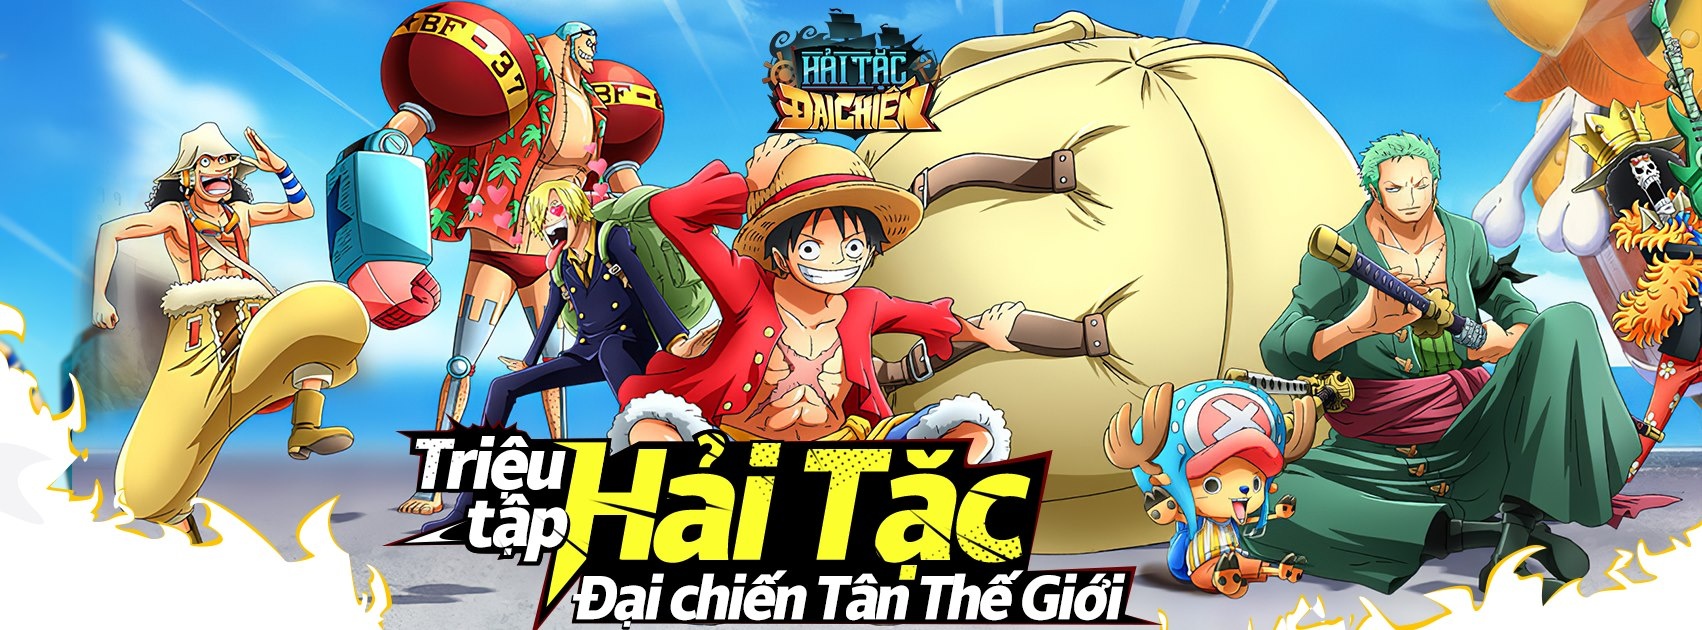 Game Hải tặc đại chiến: Siêu phẩm chiến thuật One Piece